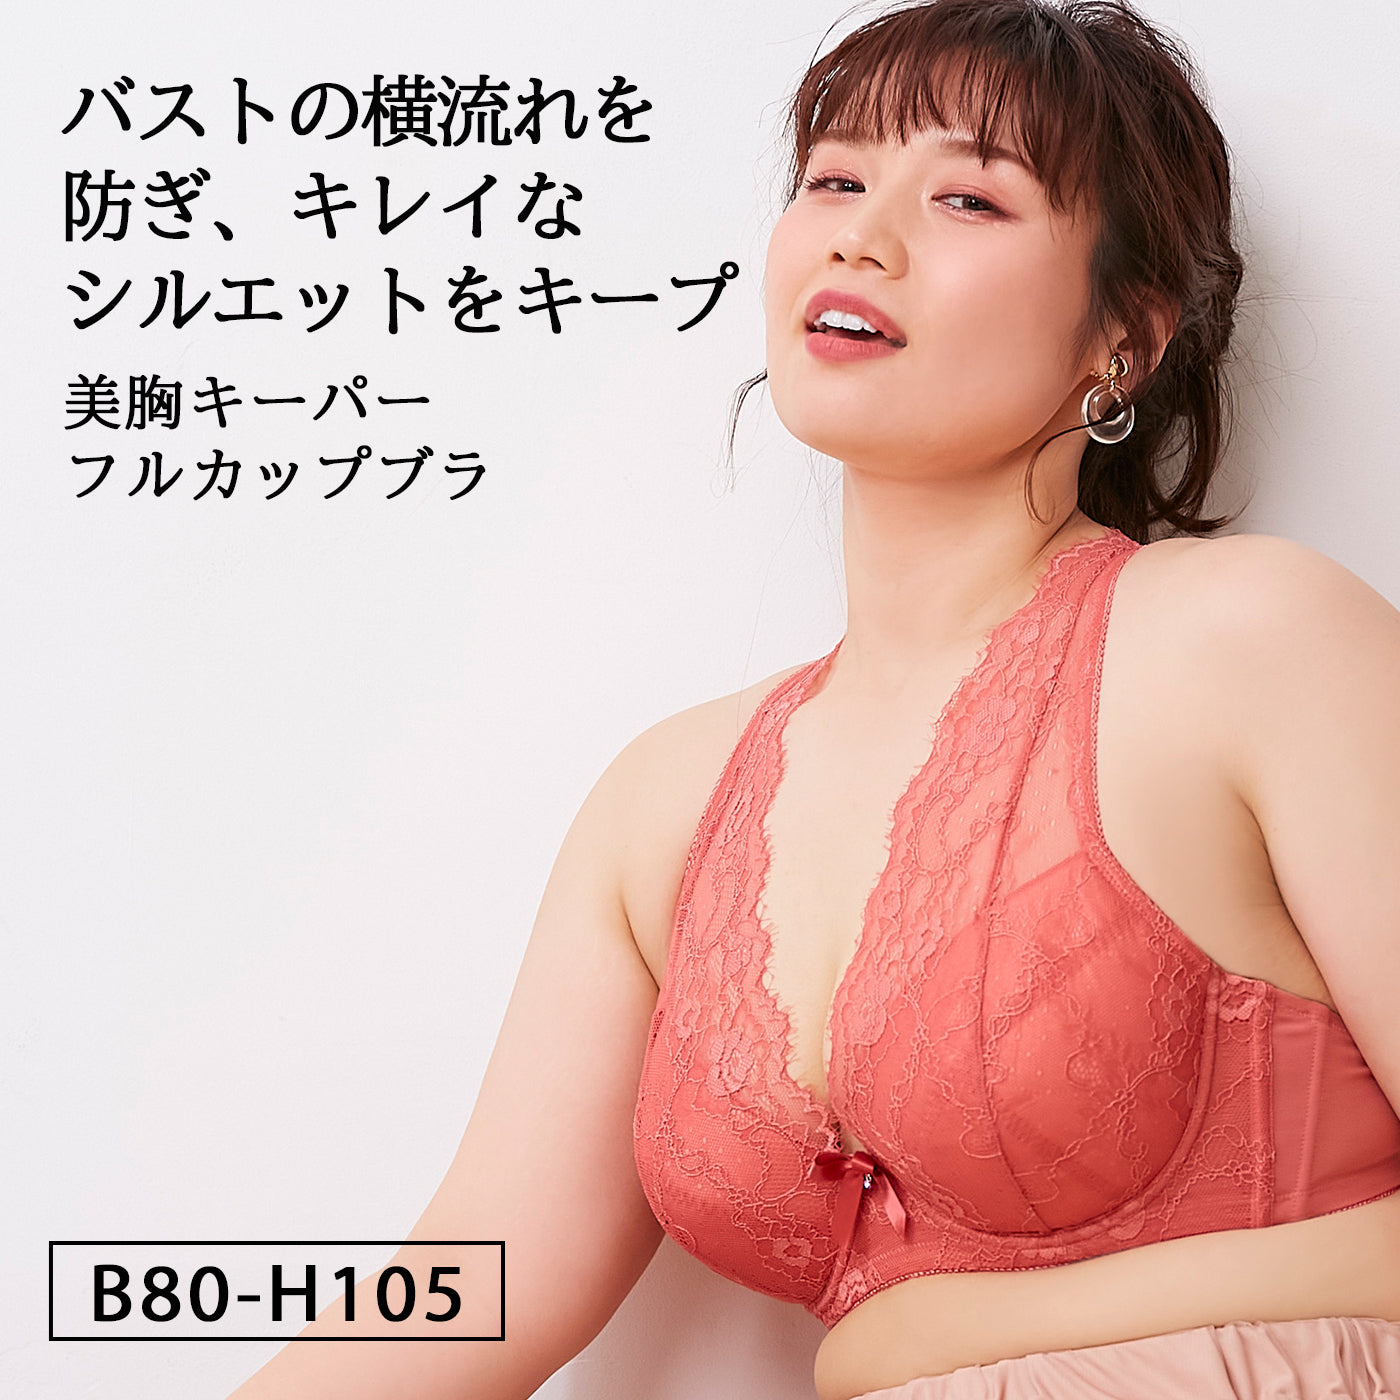 【B80〜H105】しっかりホールド・美胸キーパーフルカップブラ(ブラッドオレンジ)_90117-18